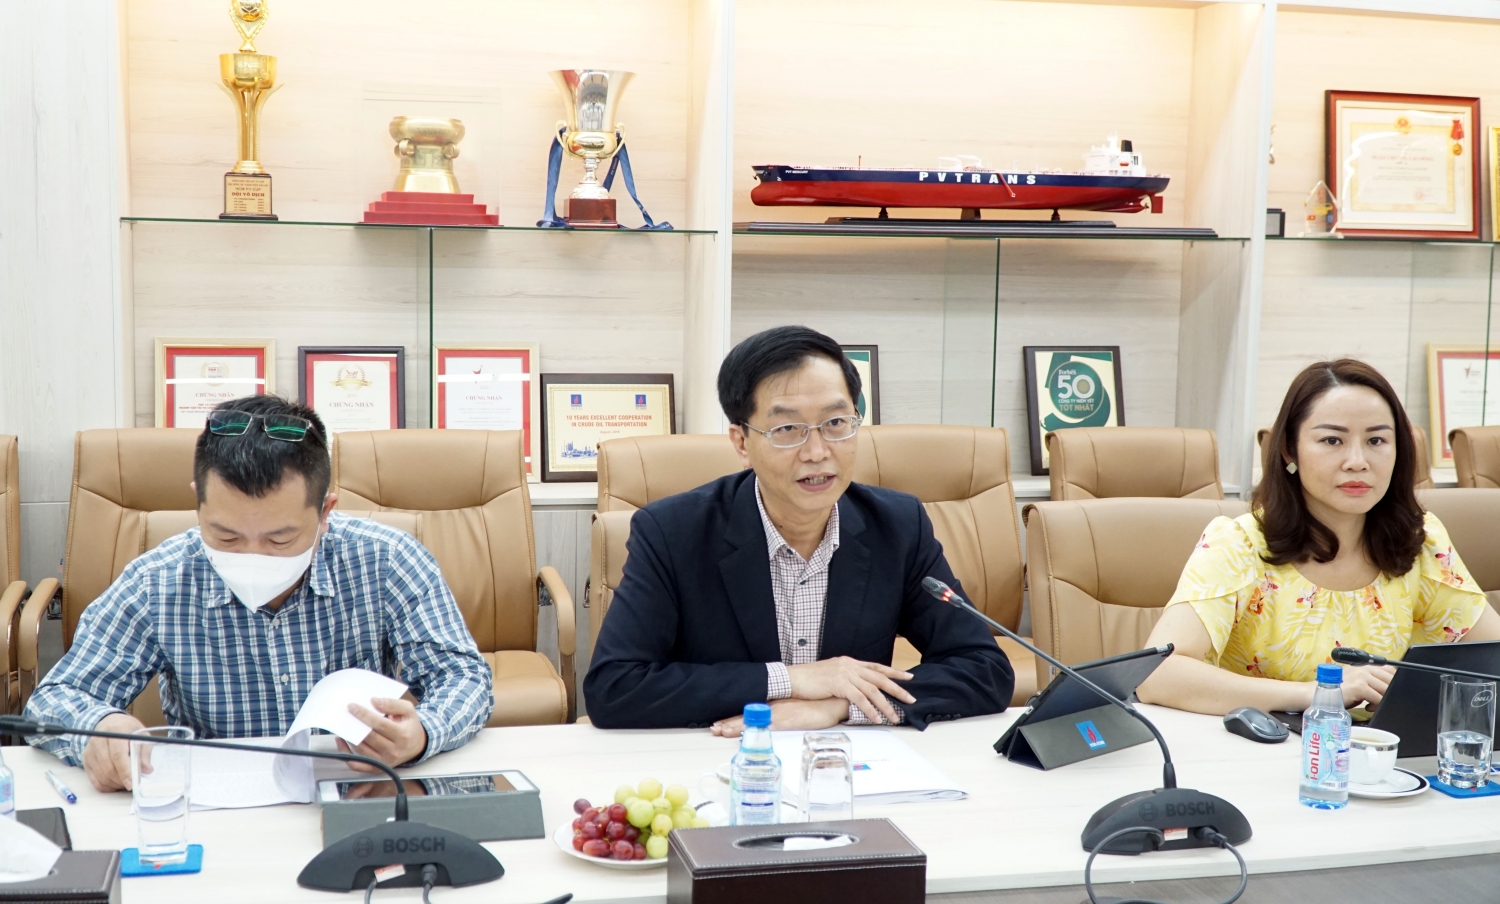 Đồng chí Trần Quang Dũng - Ủy viên Ban Thường vụ Đảng ủy, Trưởng ban Truyền thông và Văn hóa doanh nghiệp (TT&VHDN) Tập đoàn, Tổ trưởng Tổ triển khai Đề án